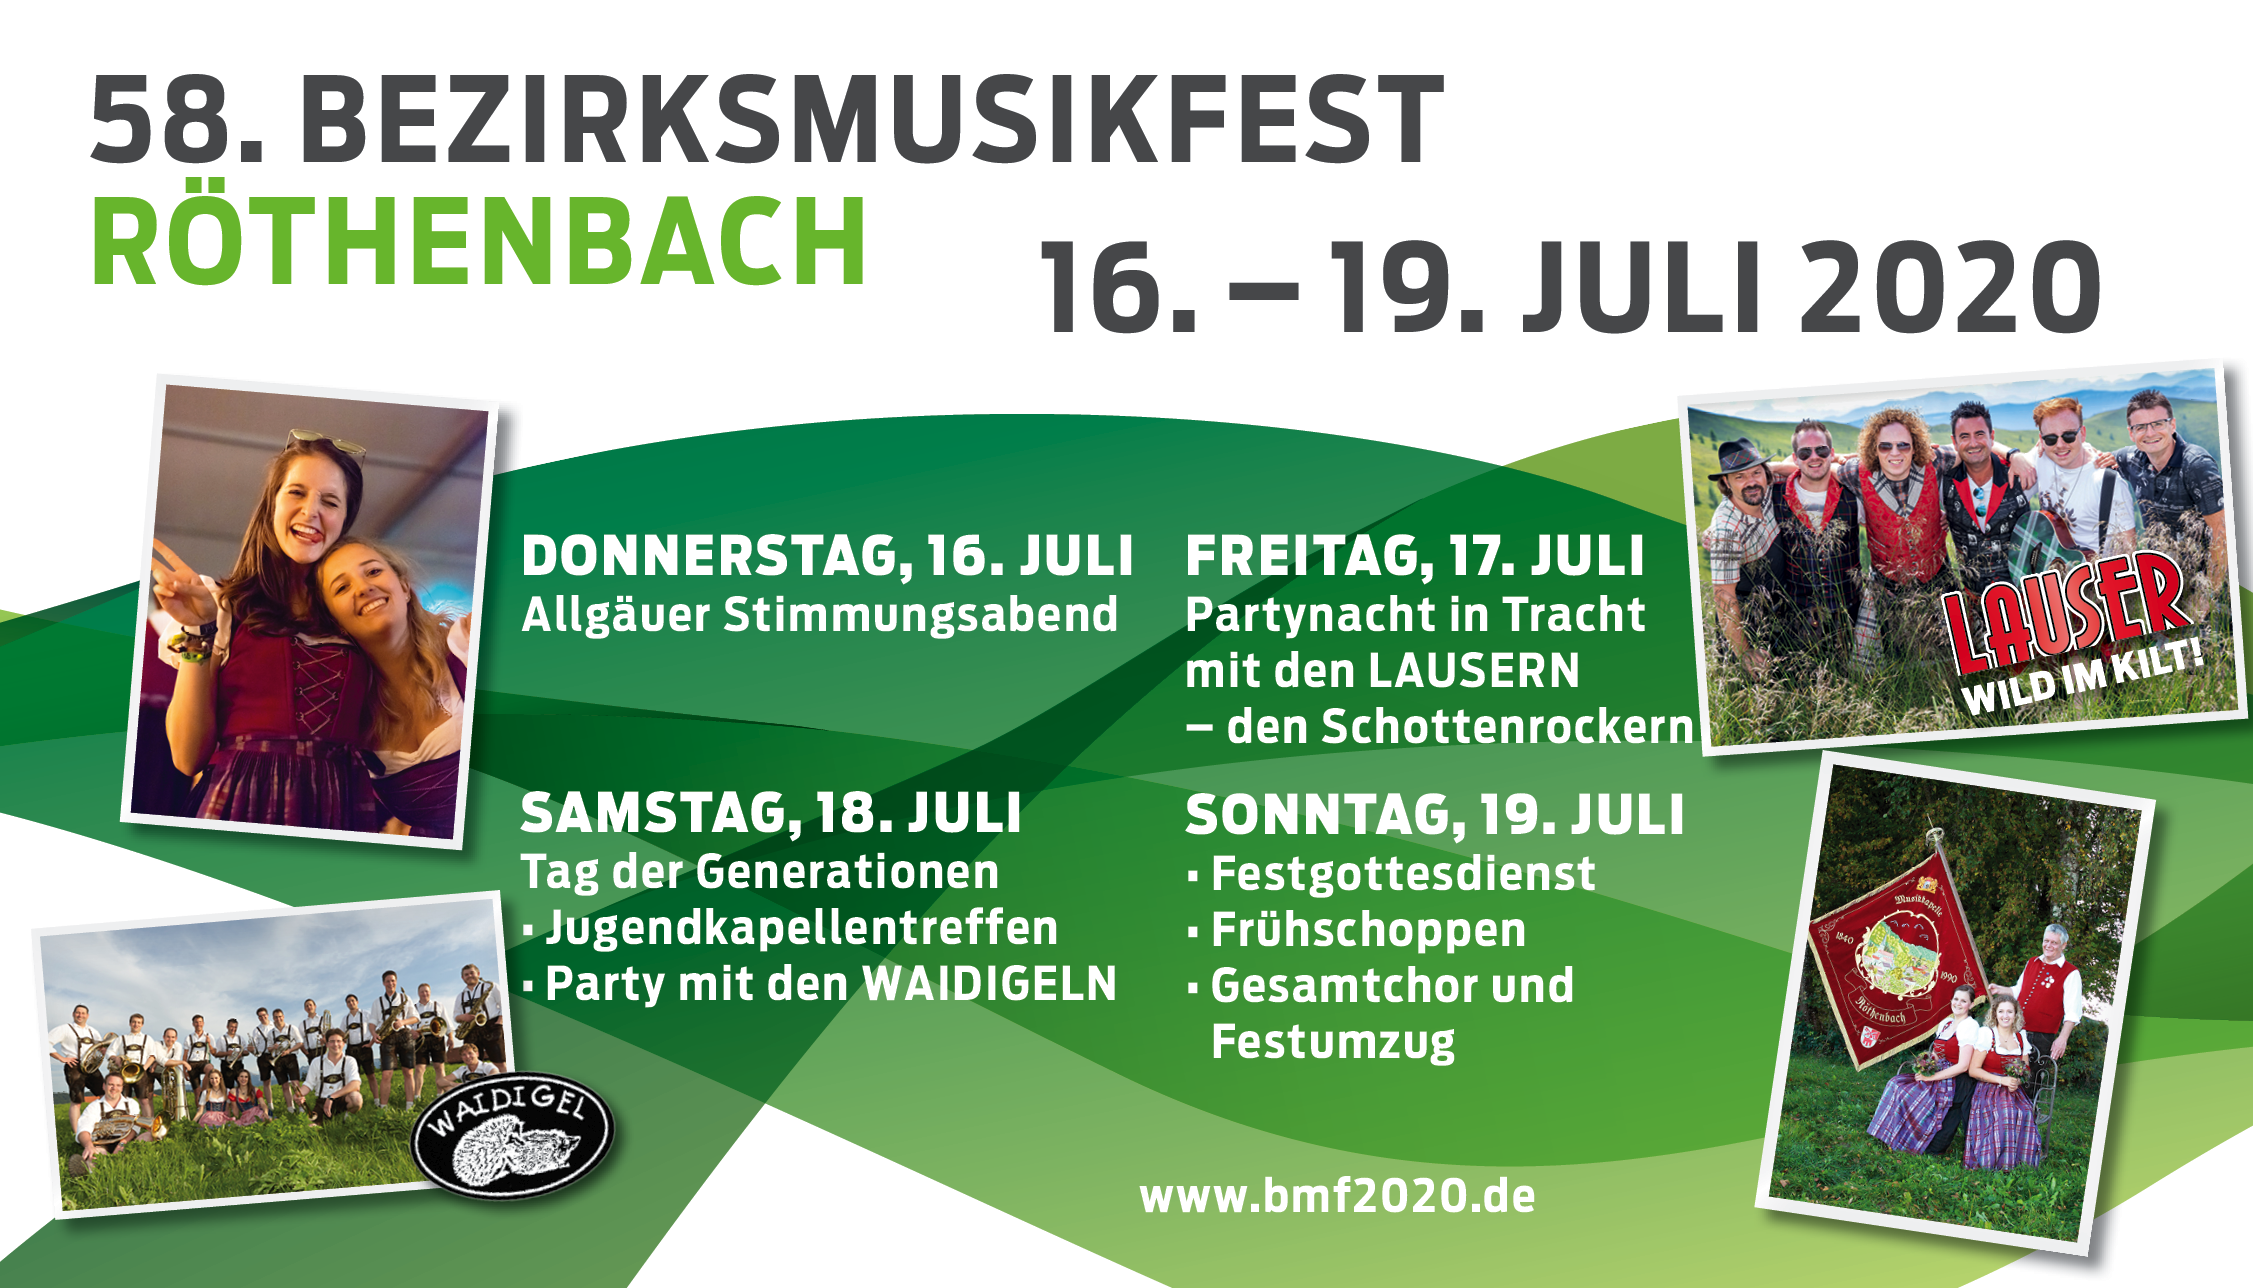 Das Programm des Bezirksmusikfest 2020 in Röthenbach, das leider abgesagt werden musste